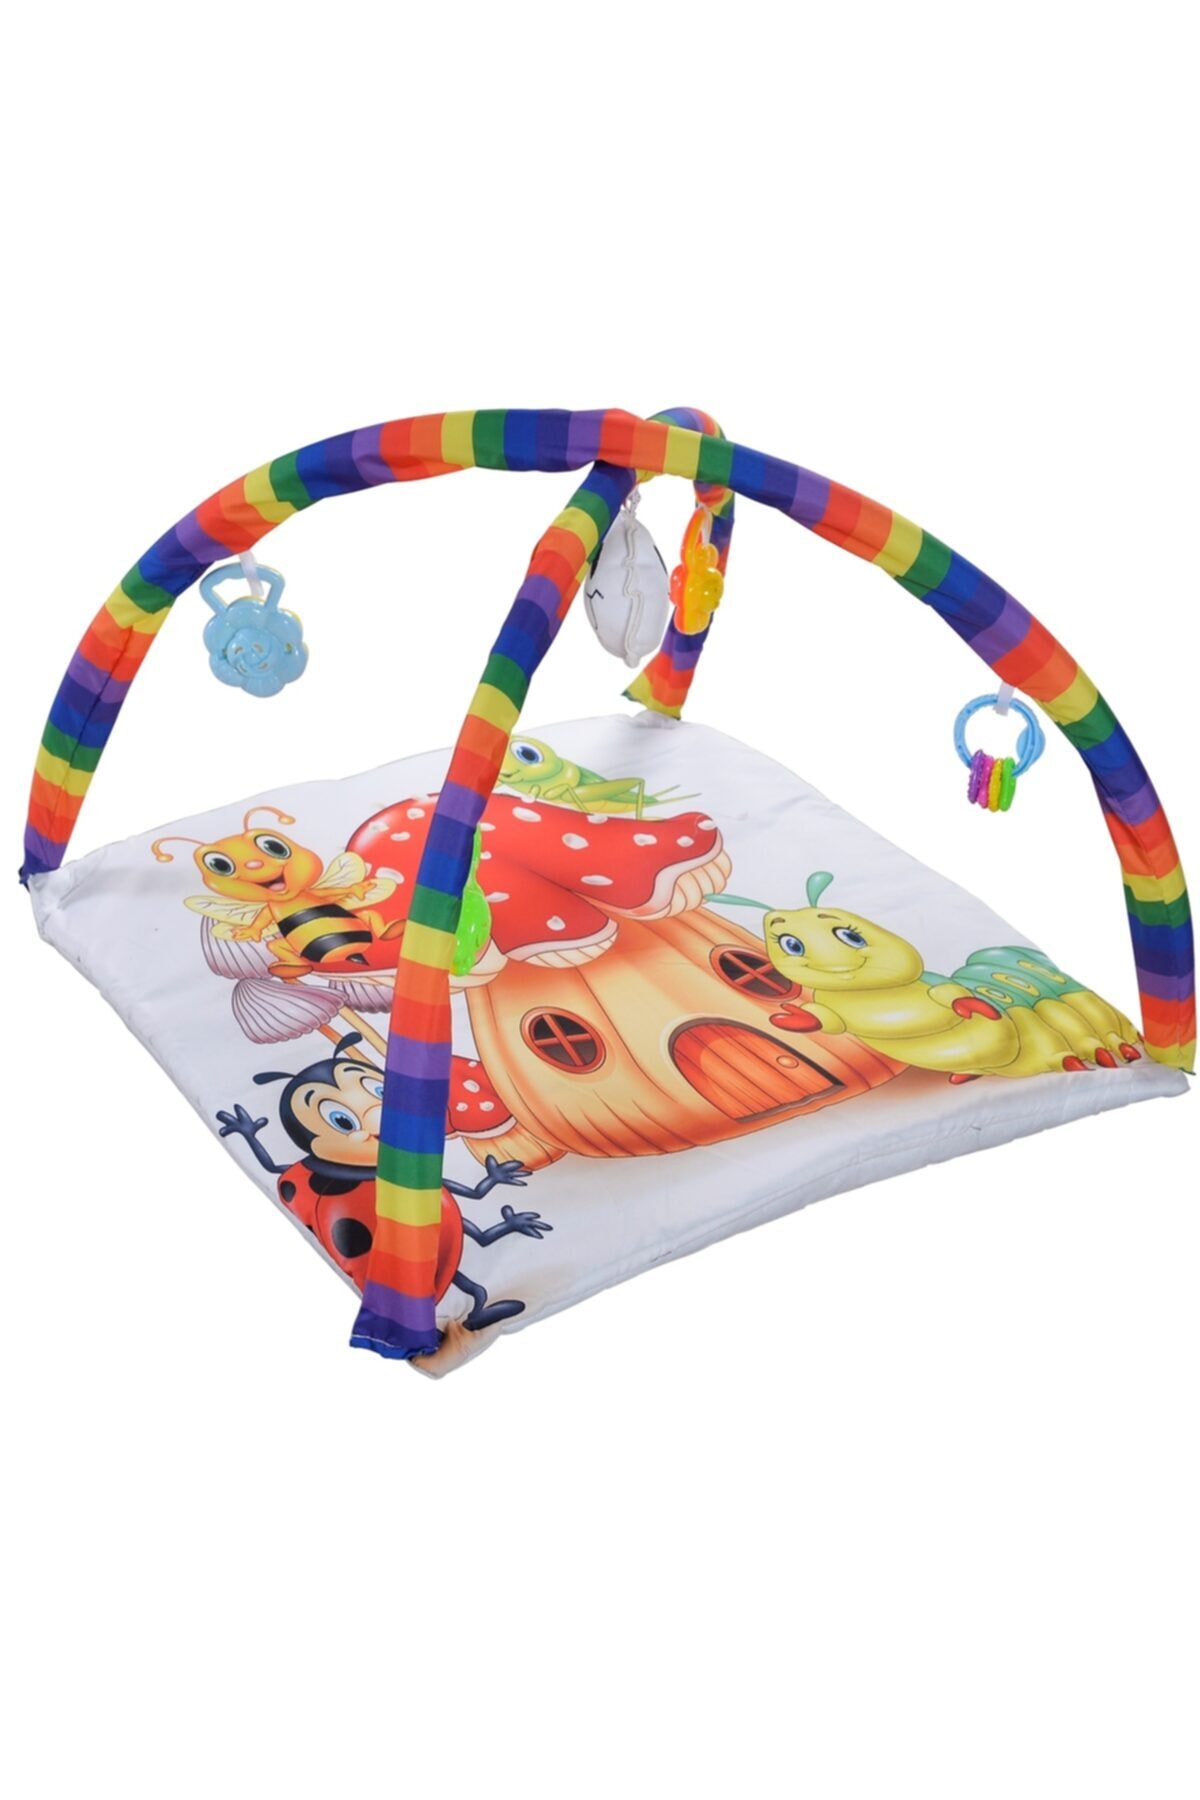 Bila Baby Mantar Bebek Oyun Halısı Çıngıraklı Oyun Minderi Oyuncaklı Bebek Yer Yatağı